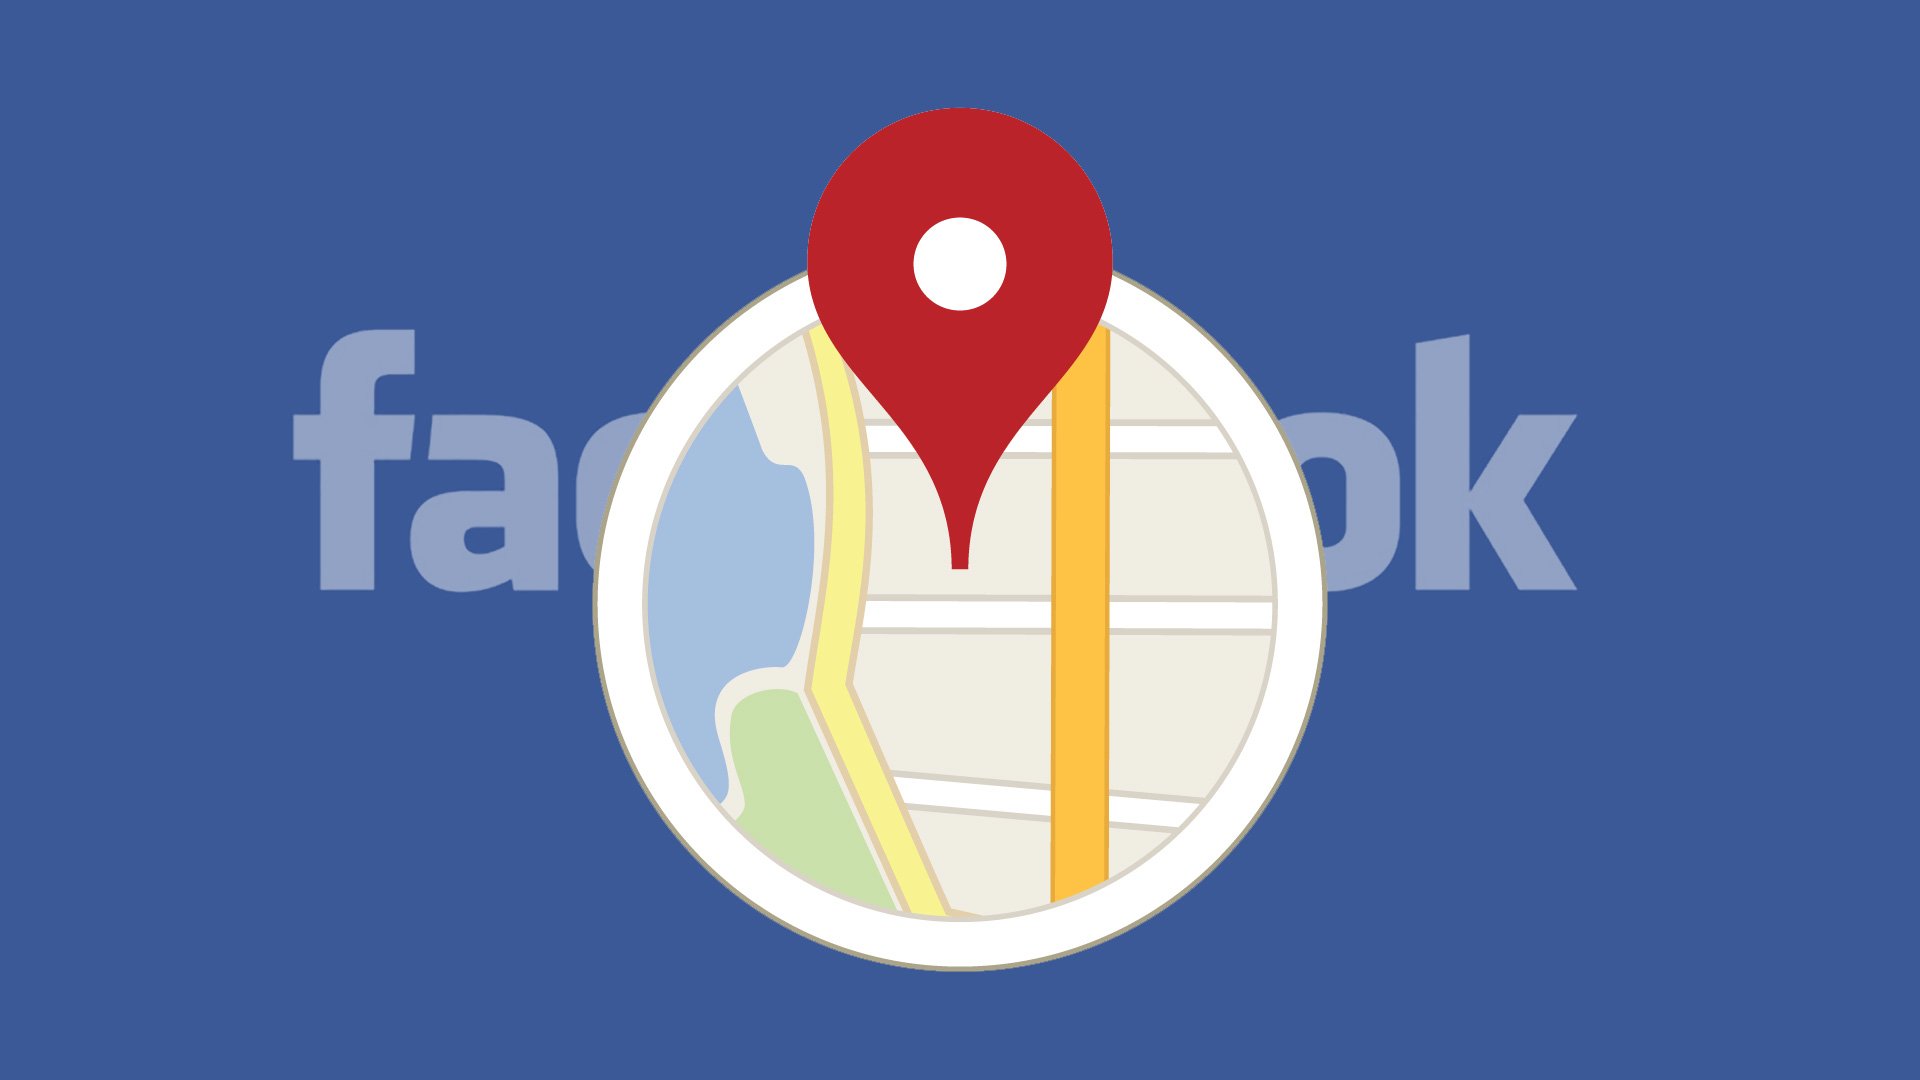 شركة فيسبوك تنافس جوجل على الخرائط باستحواذها على هذه الشركة